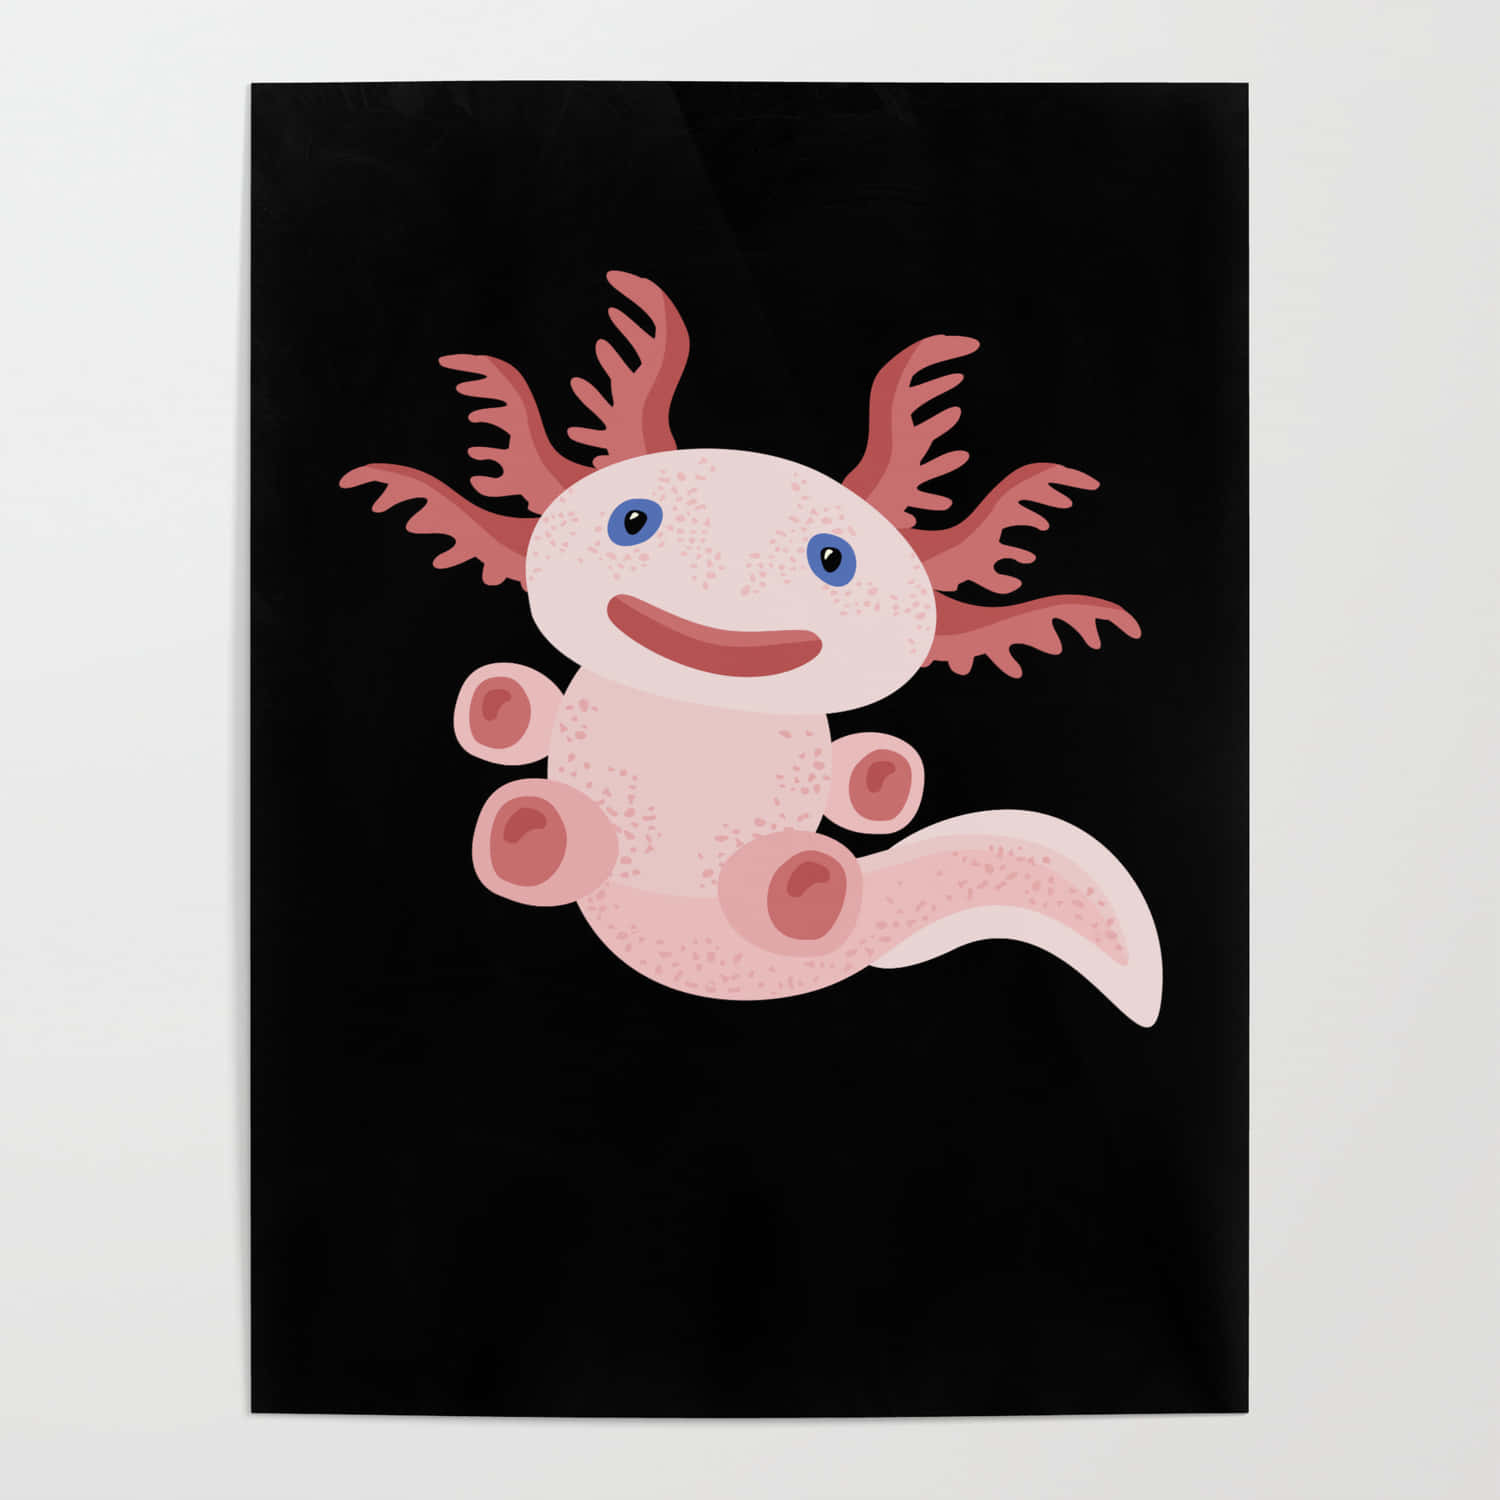 Cute Axolotl Minimalist Digital Painting Wallpaper